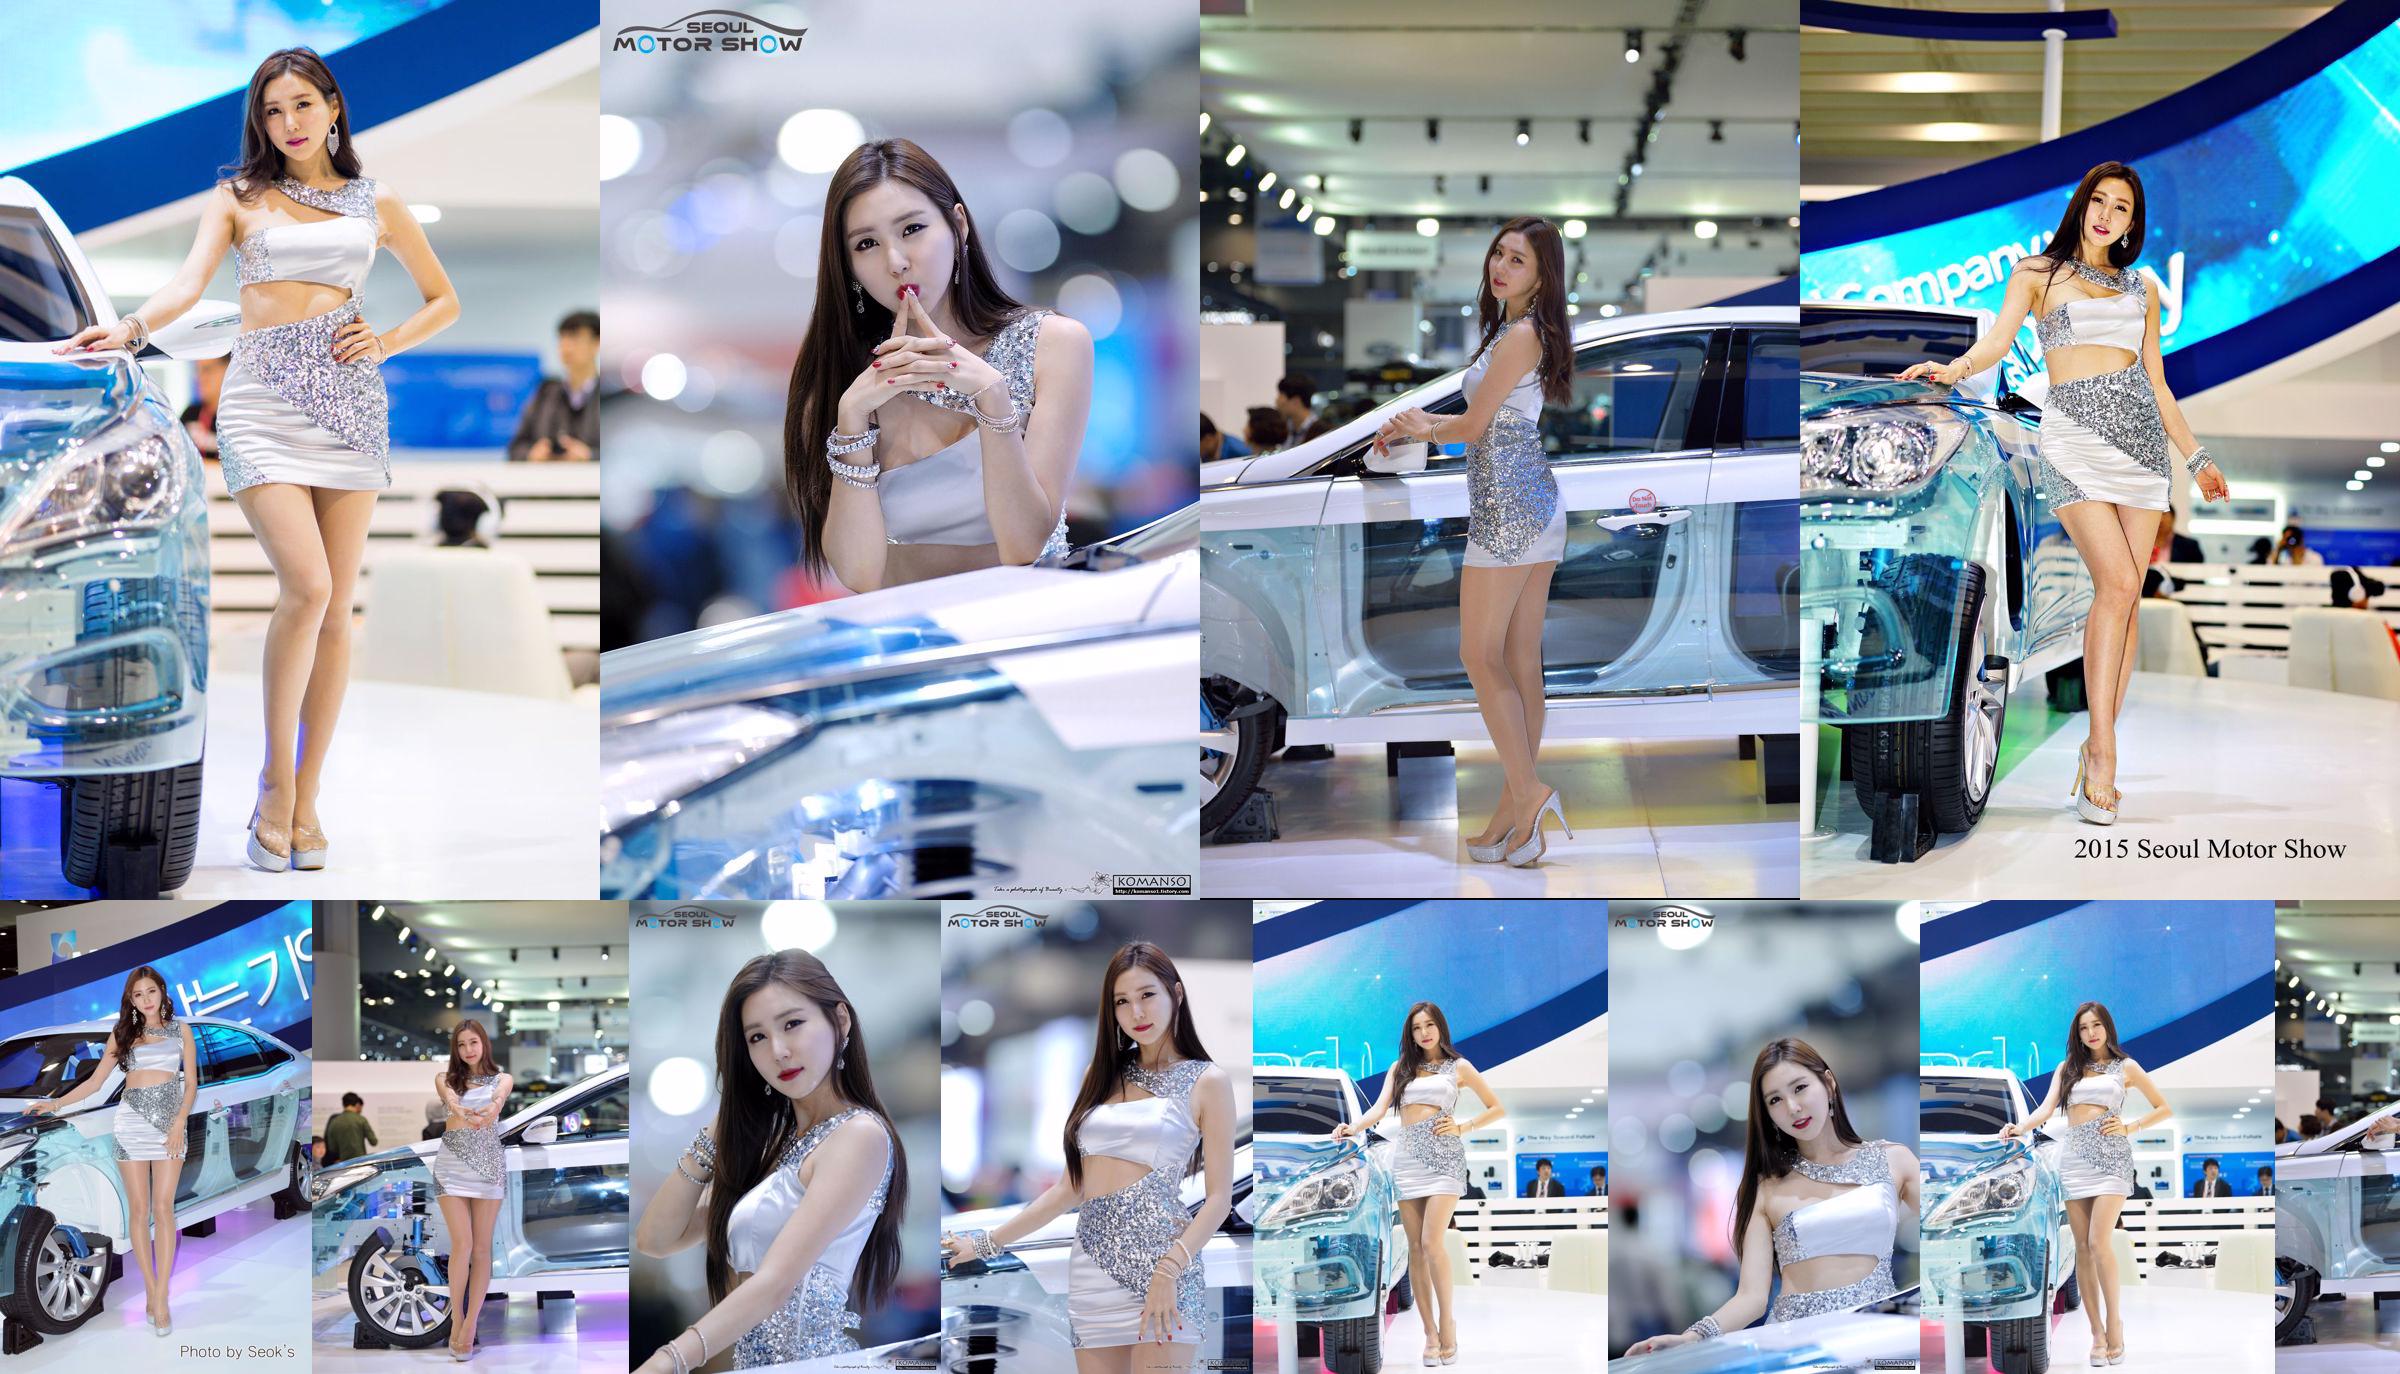 Modelo de coche coreano Choi Yujin-Auto Show Colección de imágenes No.d89583 Página 4